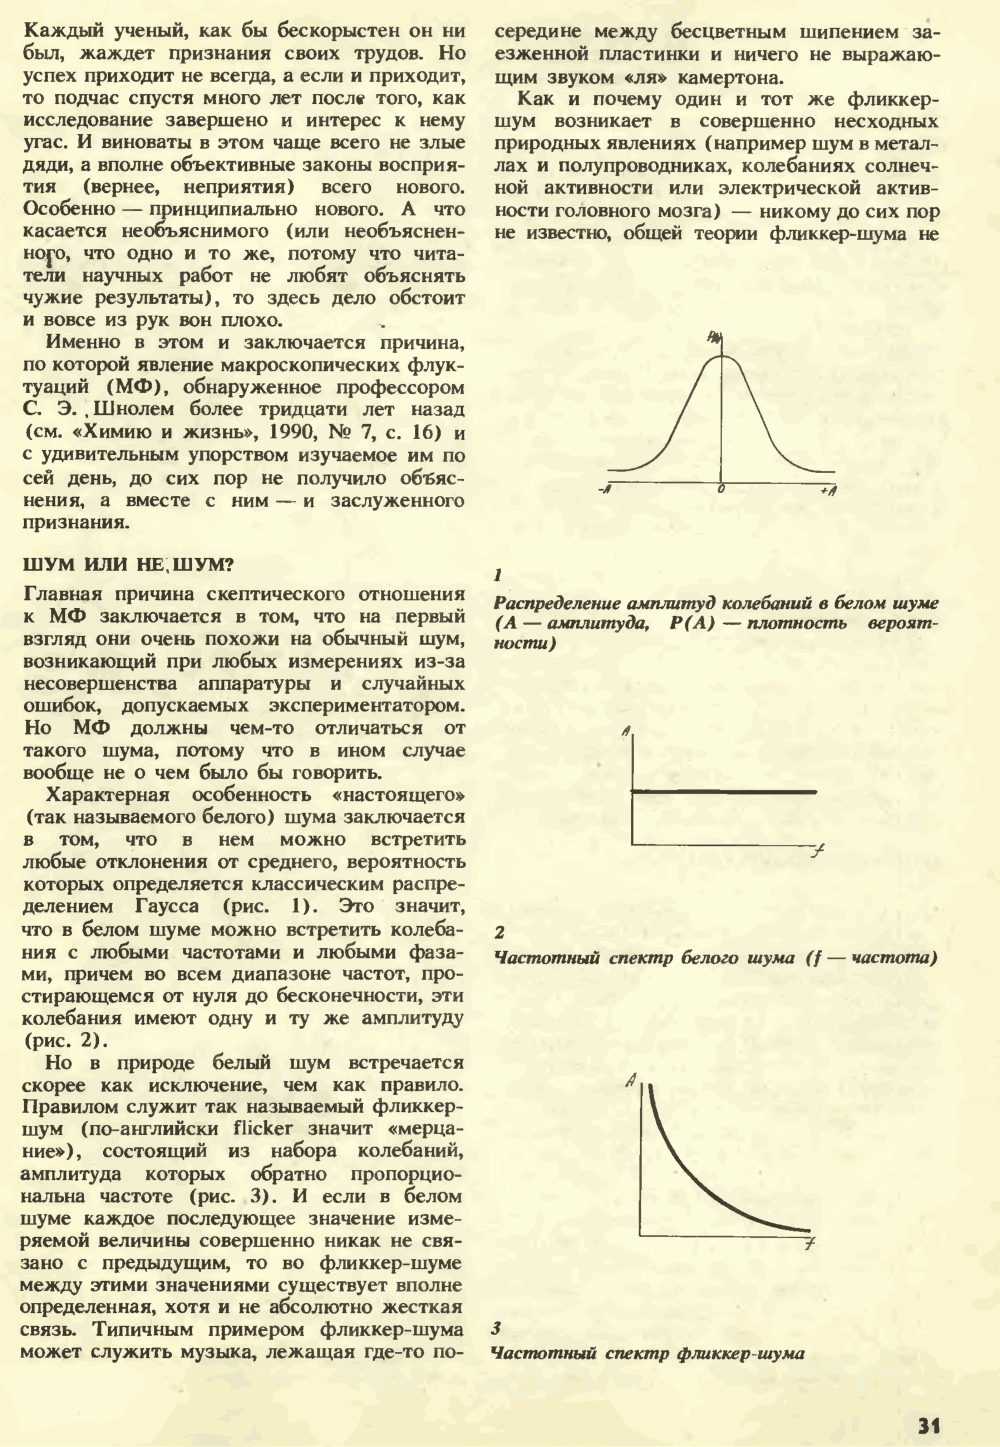 Изменчивая музыка Вселенной. В.Е. Жвирблис. Химия и жизнь, 1991, №3, с.30-34. Фотокопия №2